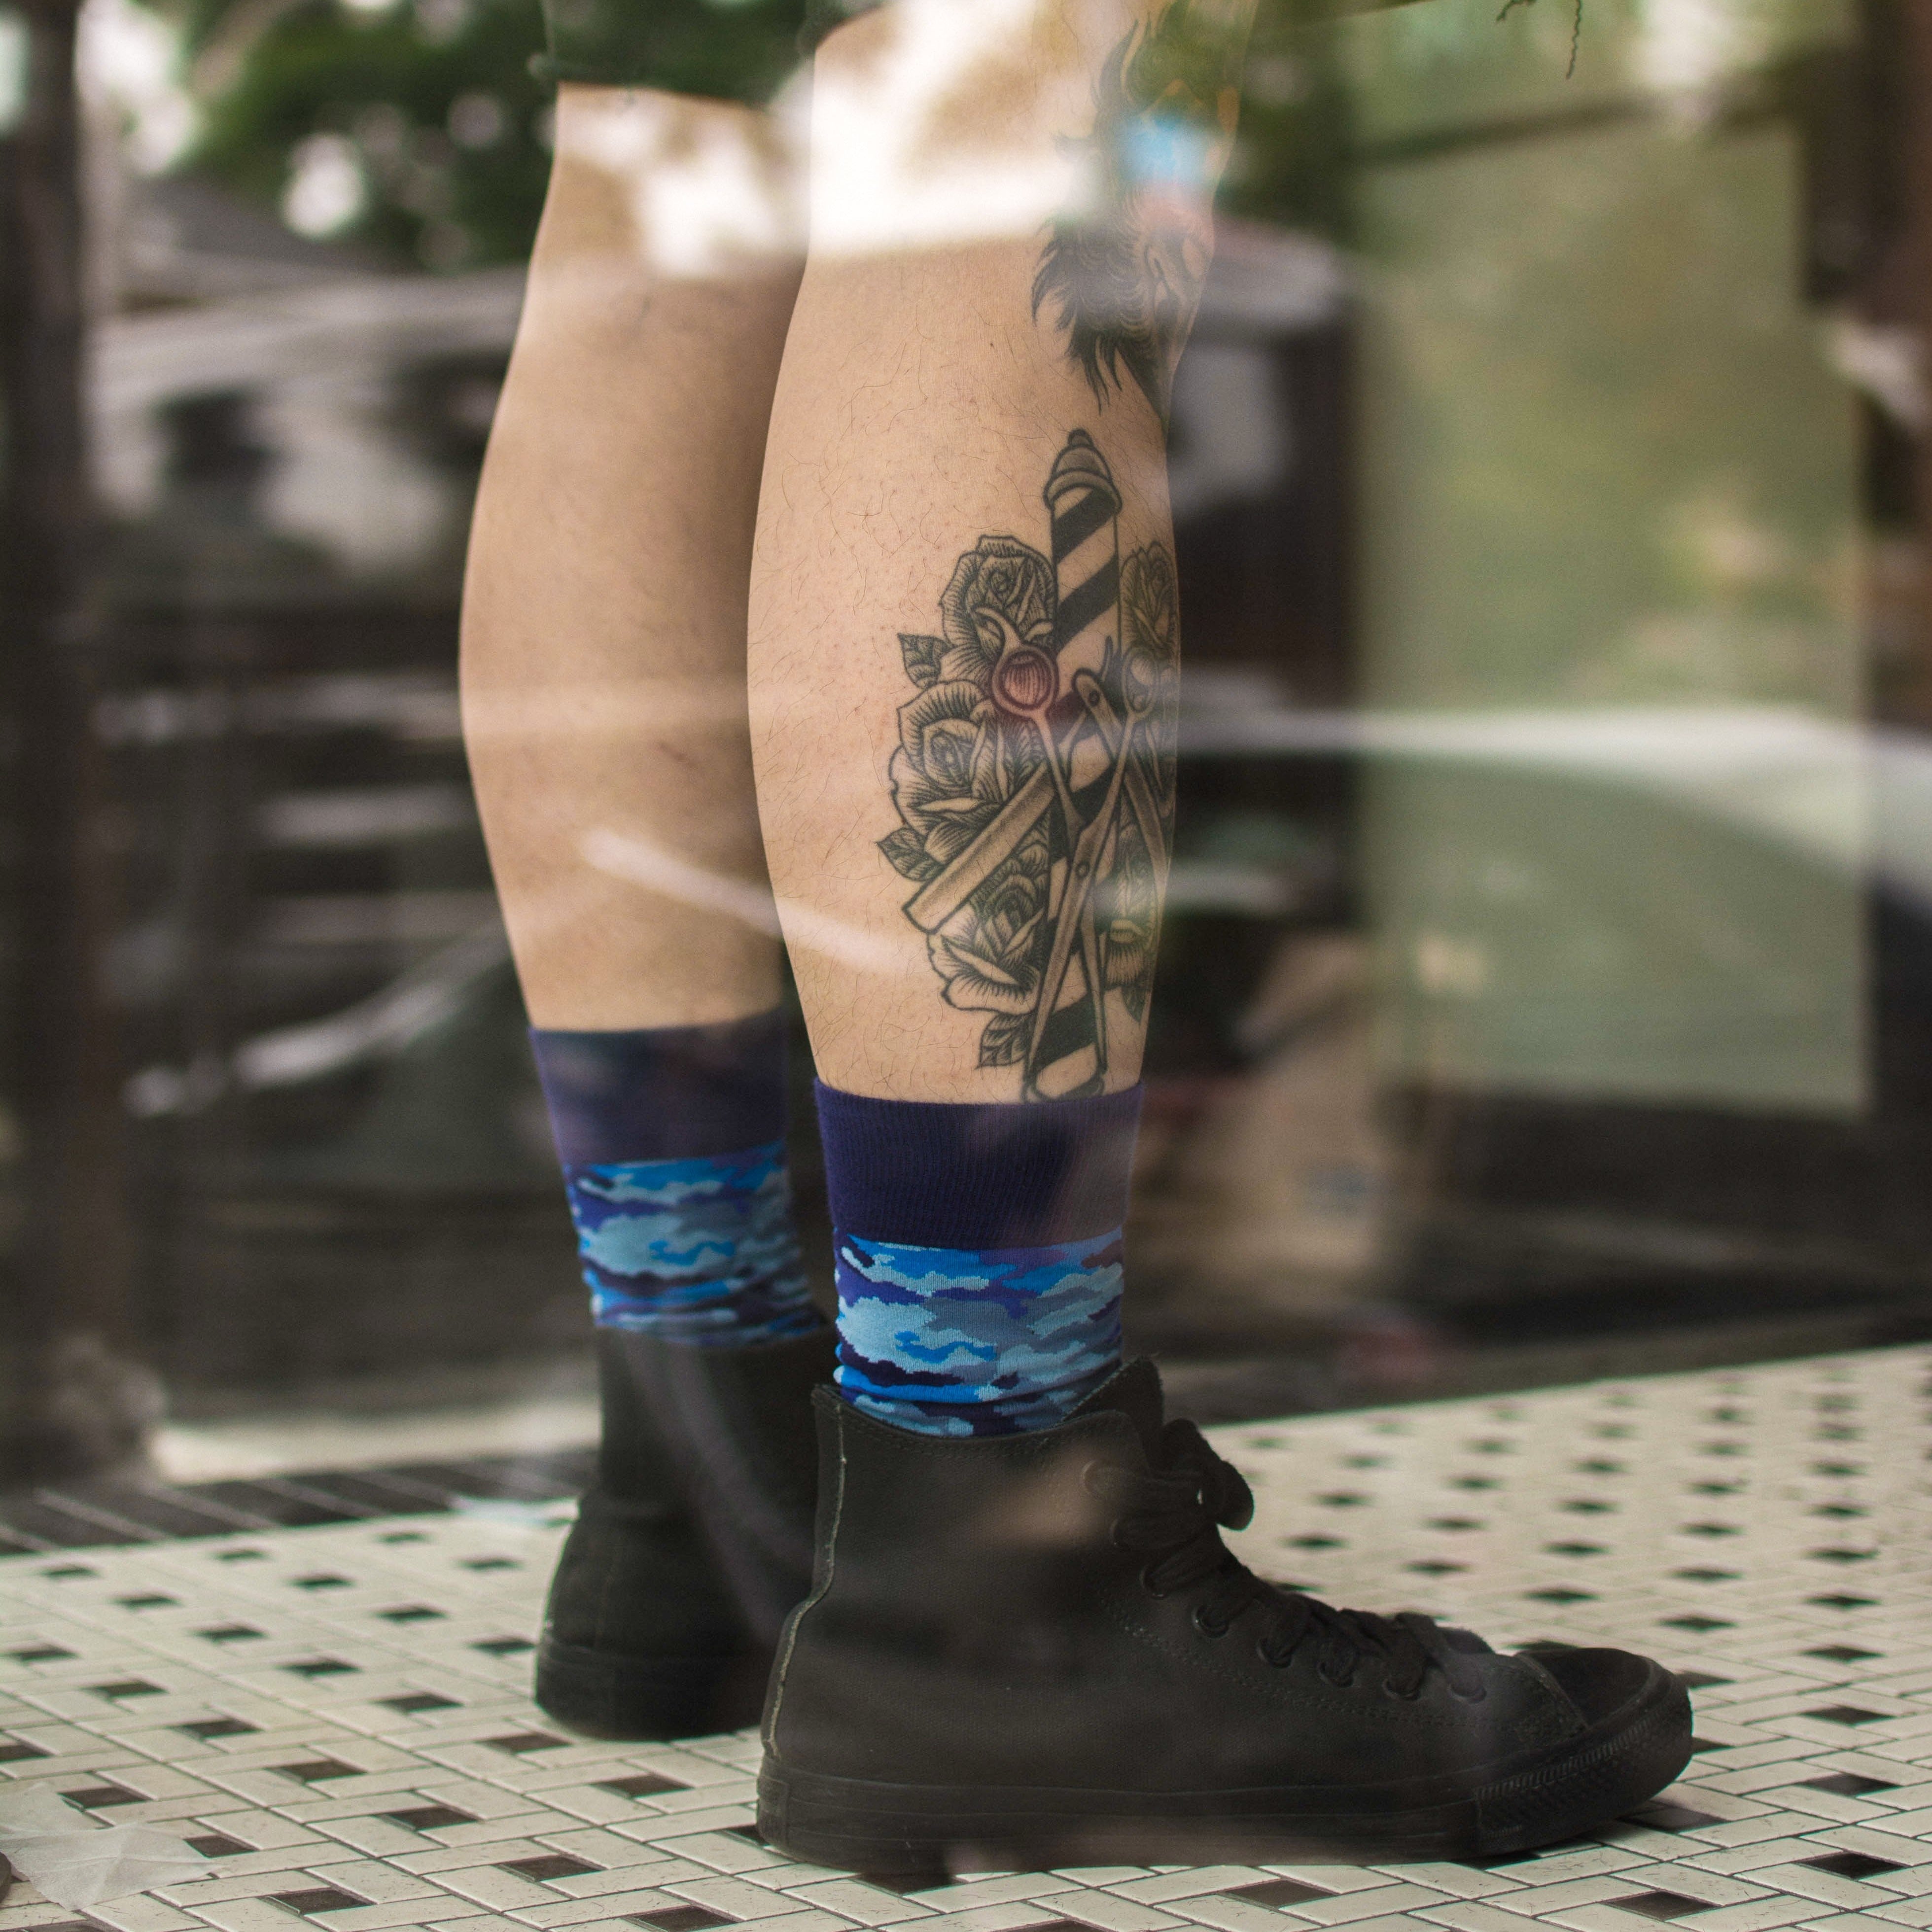 Little Socks Tattoo | Sock tattoo, Tiny tattoos, Color tattoo